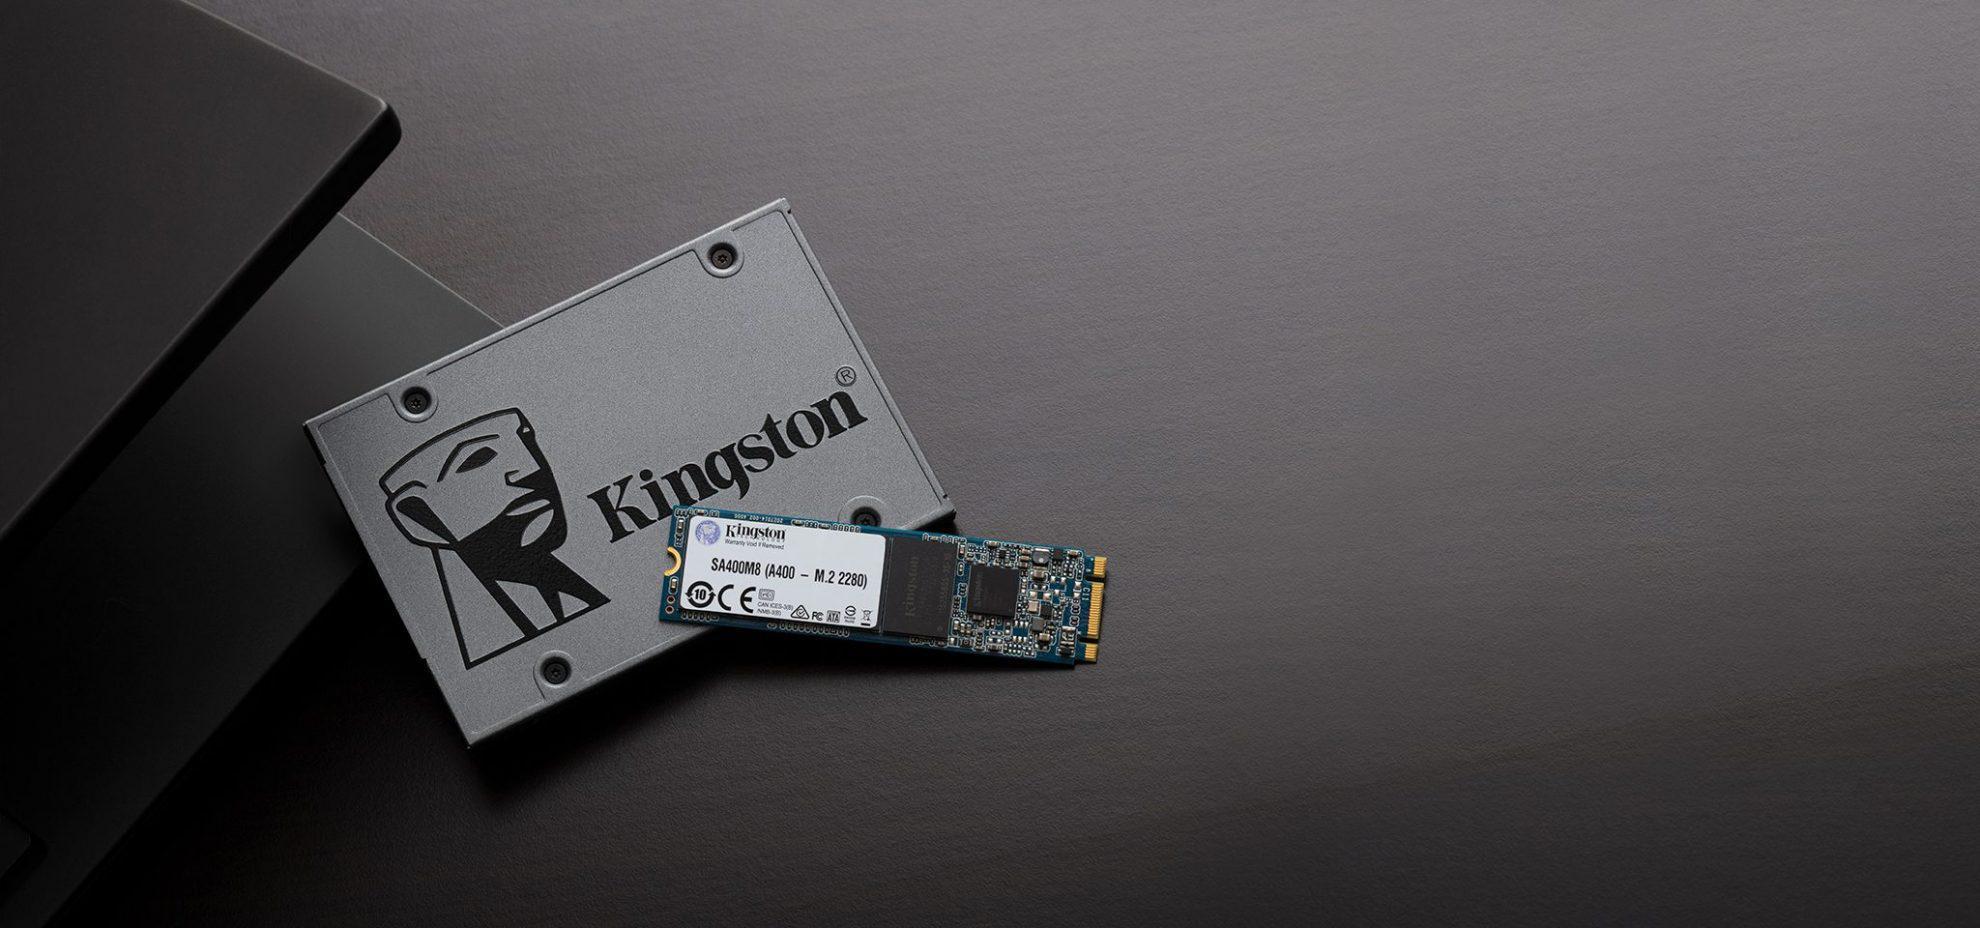 حافظه SSD اینترنال کینگستون A400 240GB Internal SSD Drive